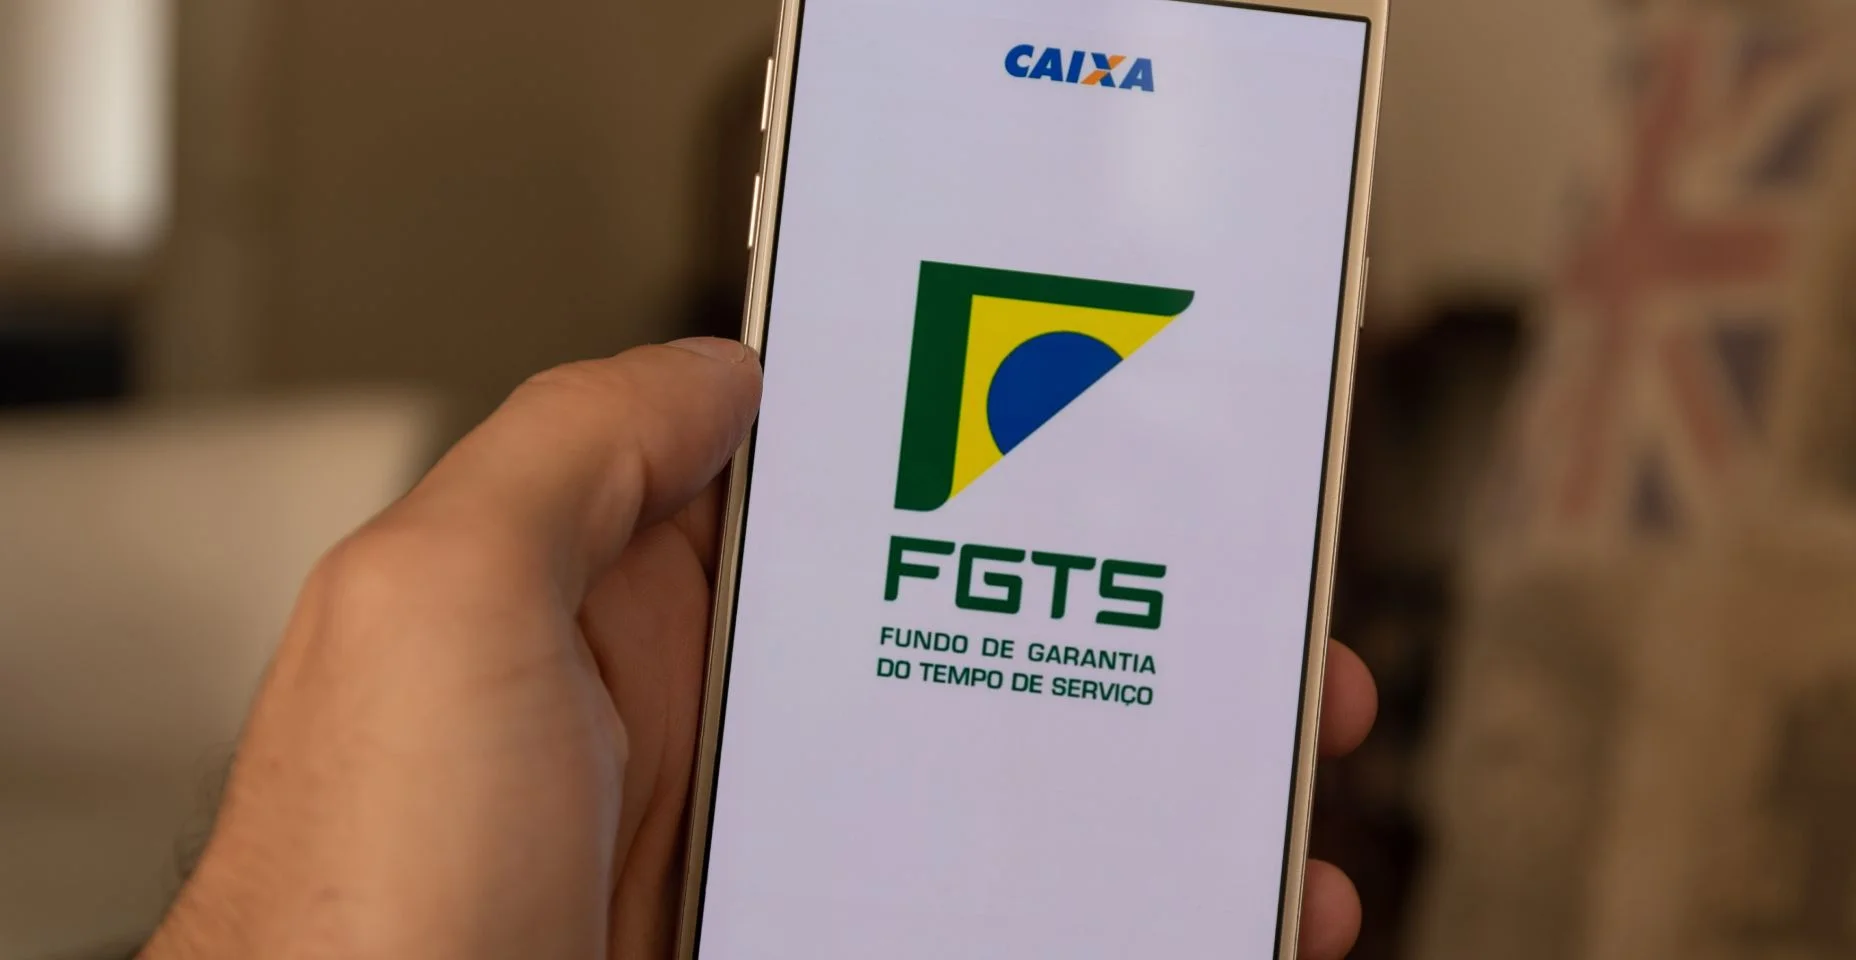 Aplicativo FGTS (Fundo Garantidor do Brasil) na tela do smartphone. Texto: Fundo de garantia de longo prazo.